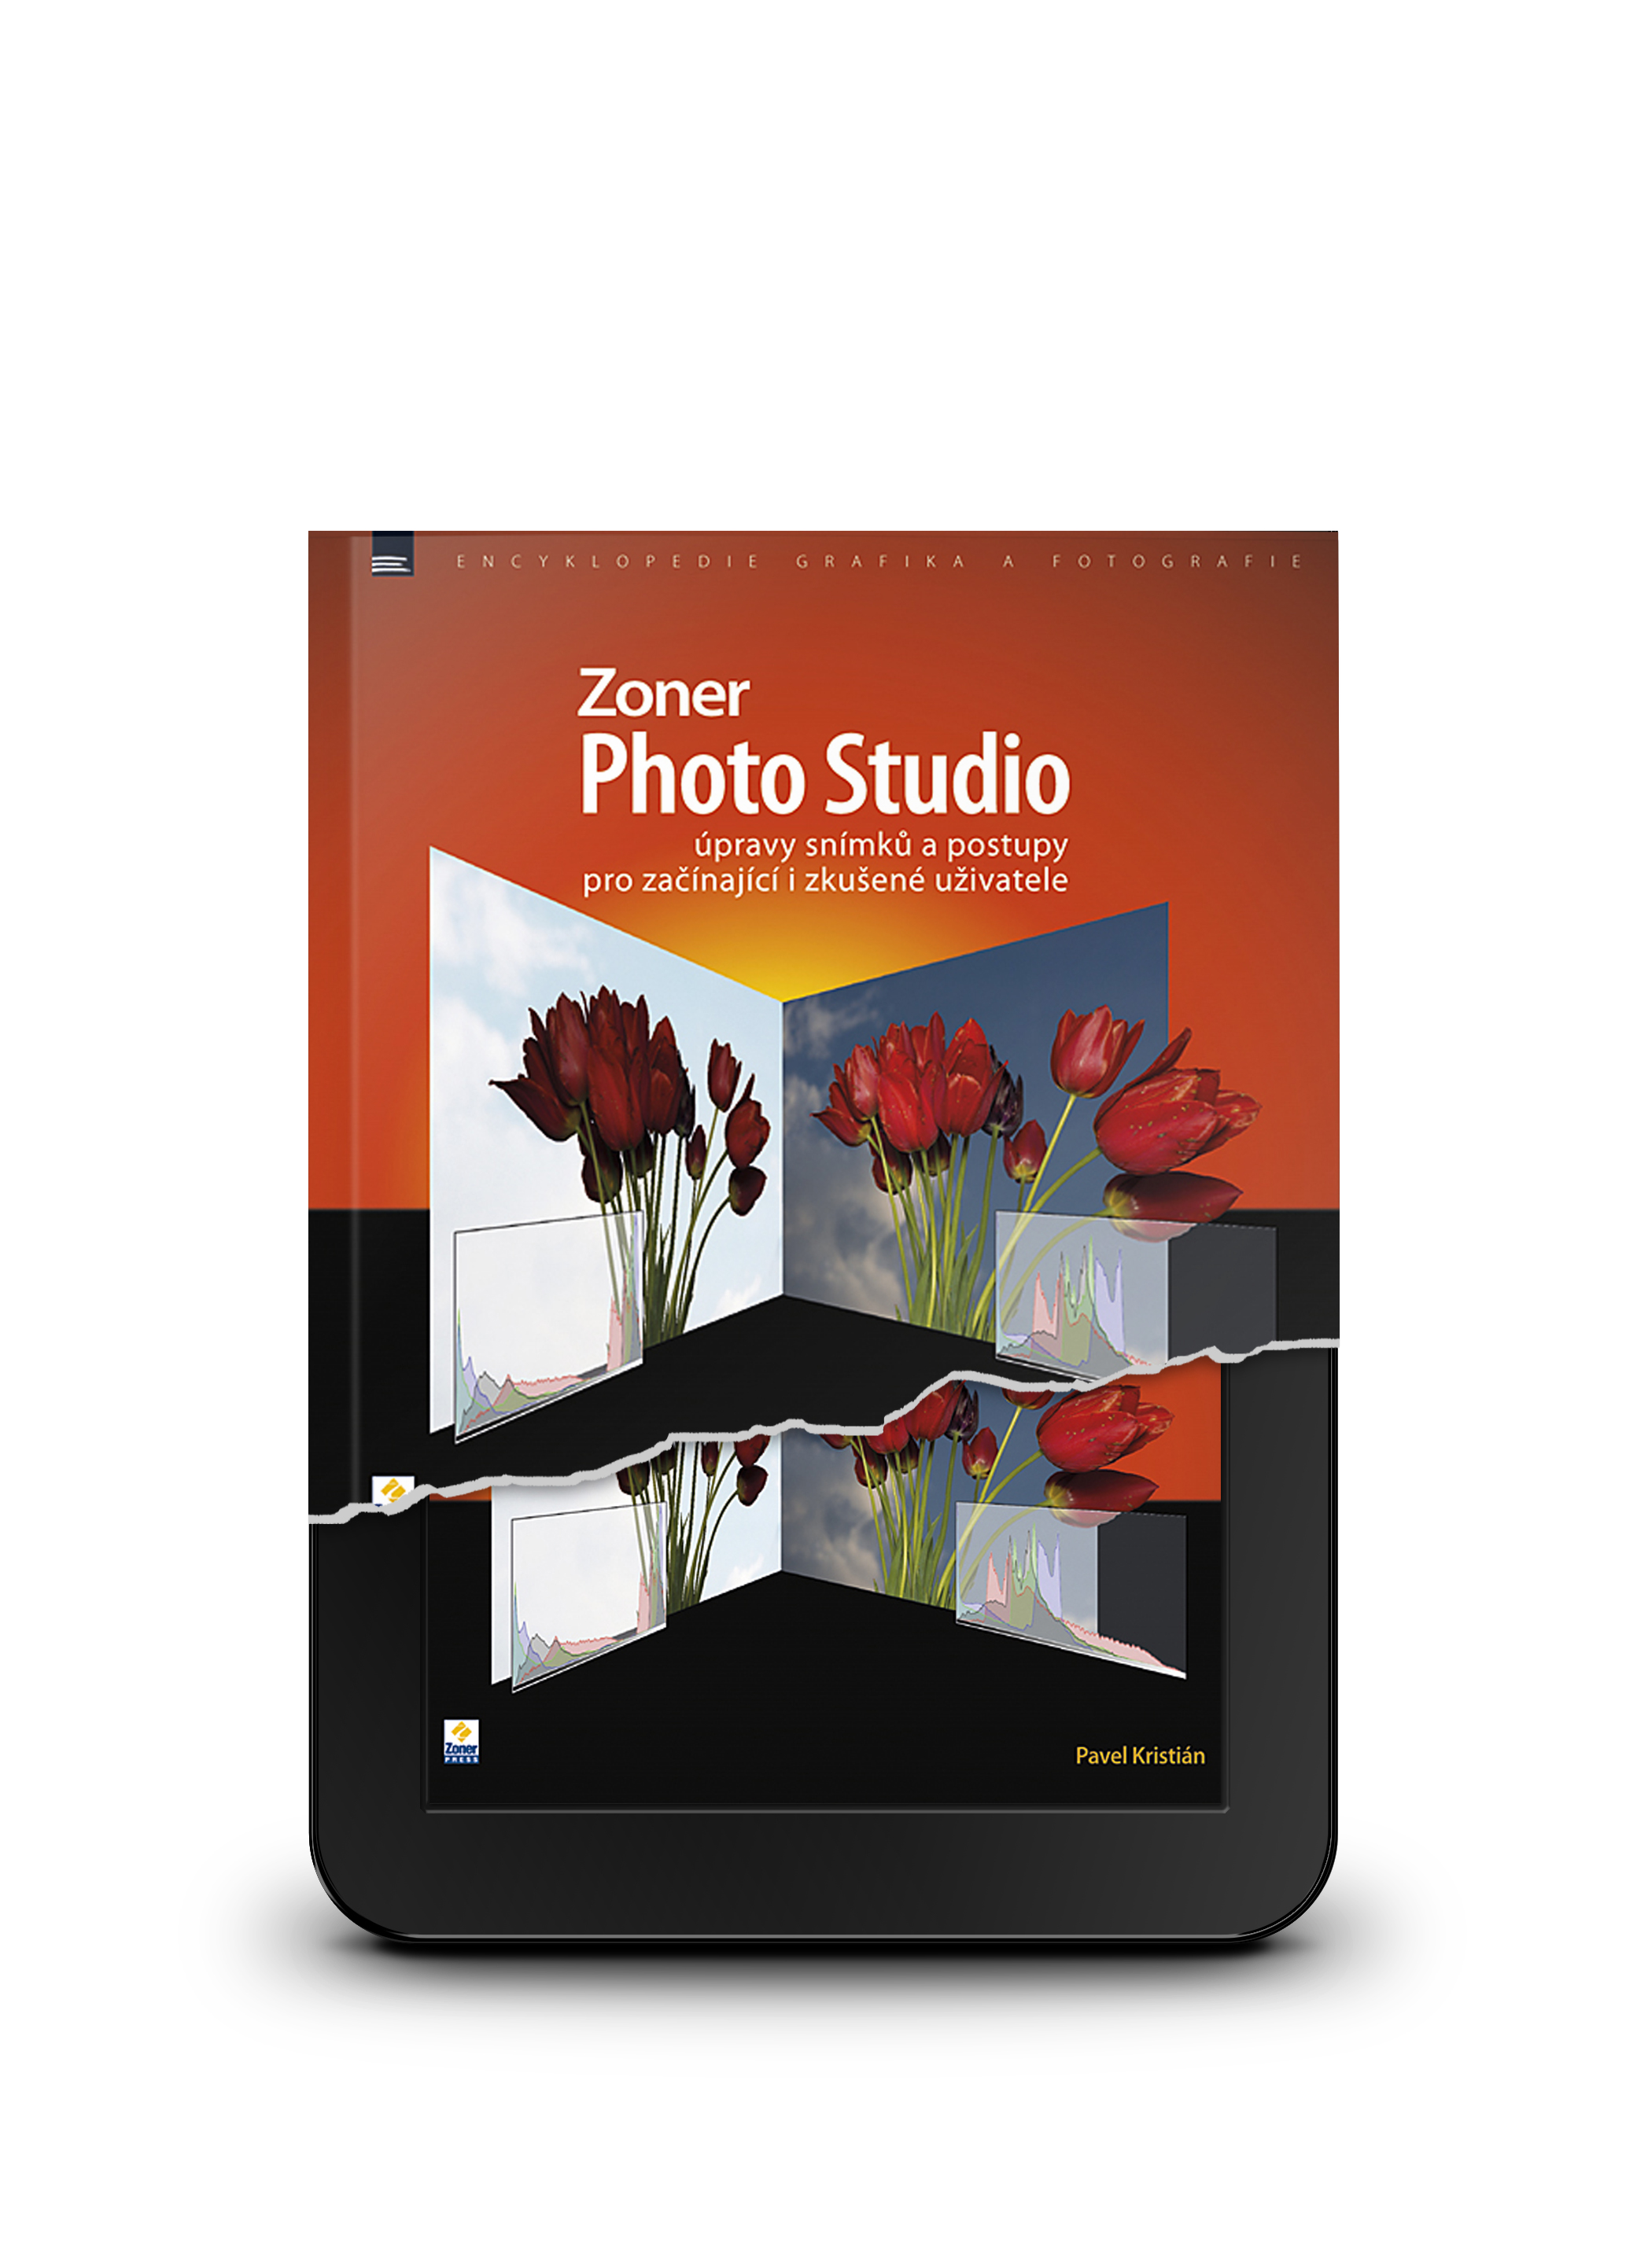 Zoner Photo Studio - úpravy snímků e-kniha - Úpravy snímků a postupy pro začínající i zkušené uživatele